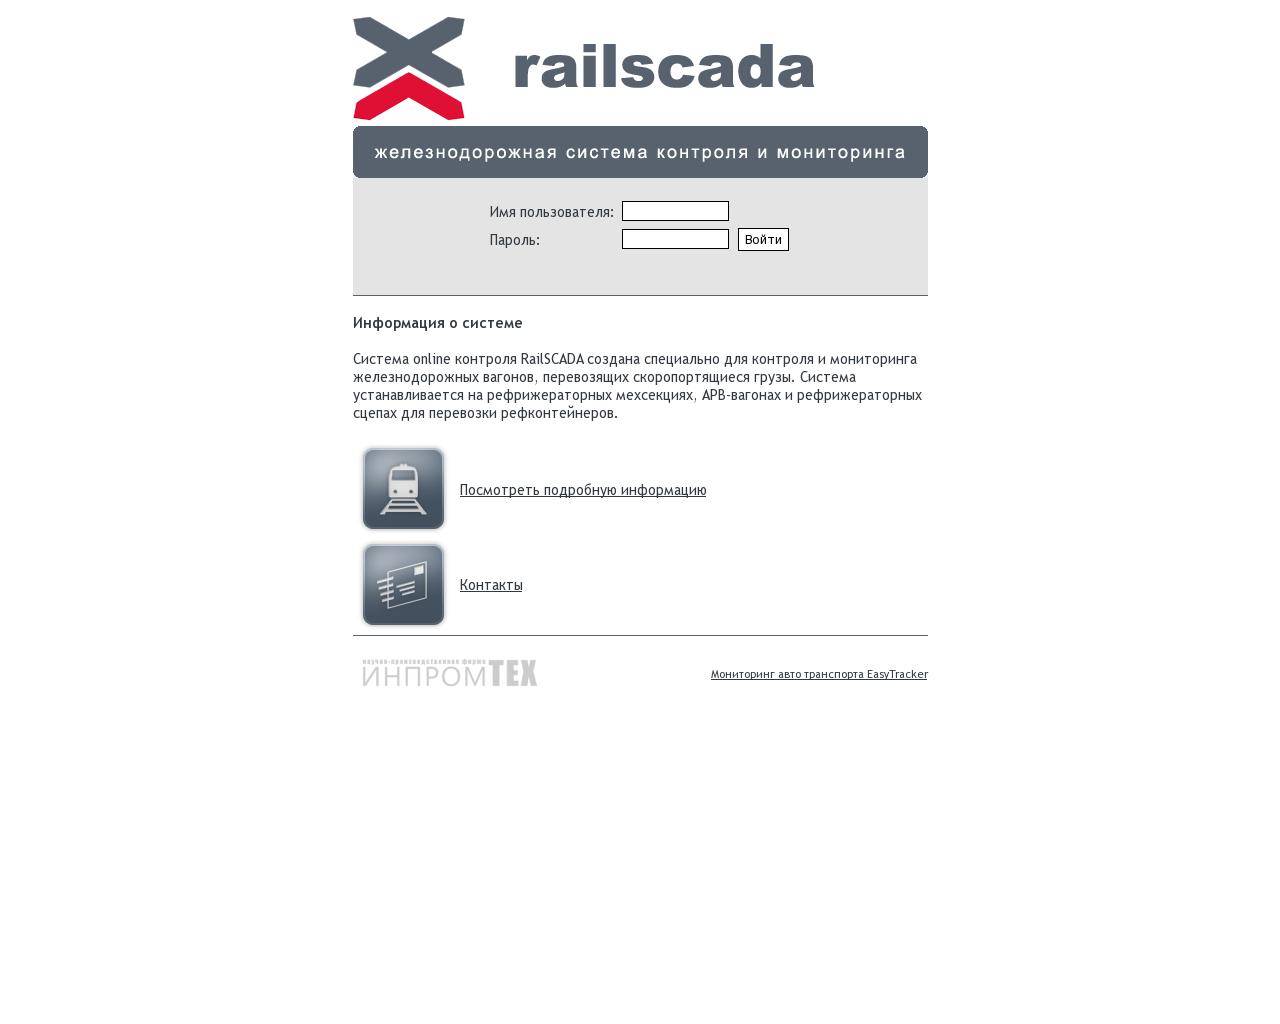 Изображение сайта railscada.ru в разрешении 1280x1024